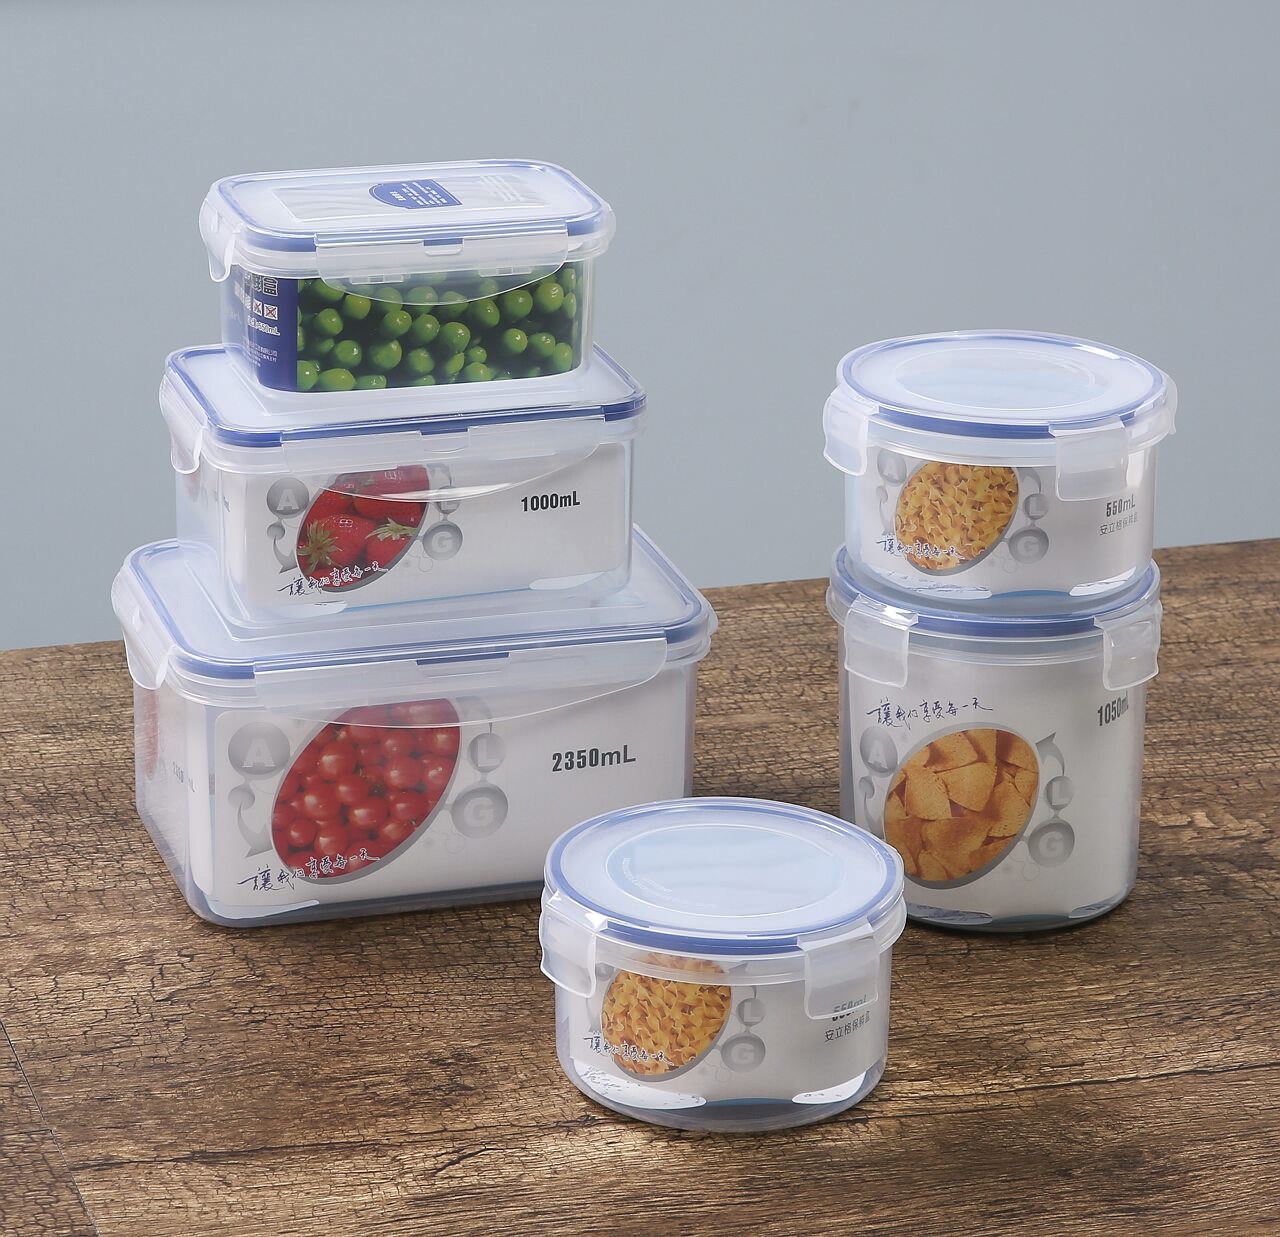 包邮促销安立格塑料密封食品微波饭盒冰箱收纳饺子保鲜盒套装6件